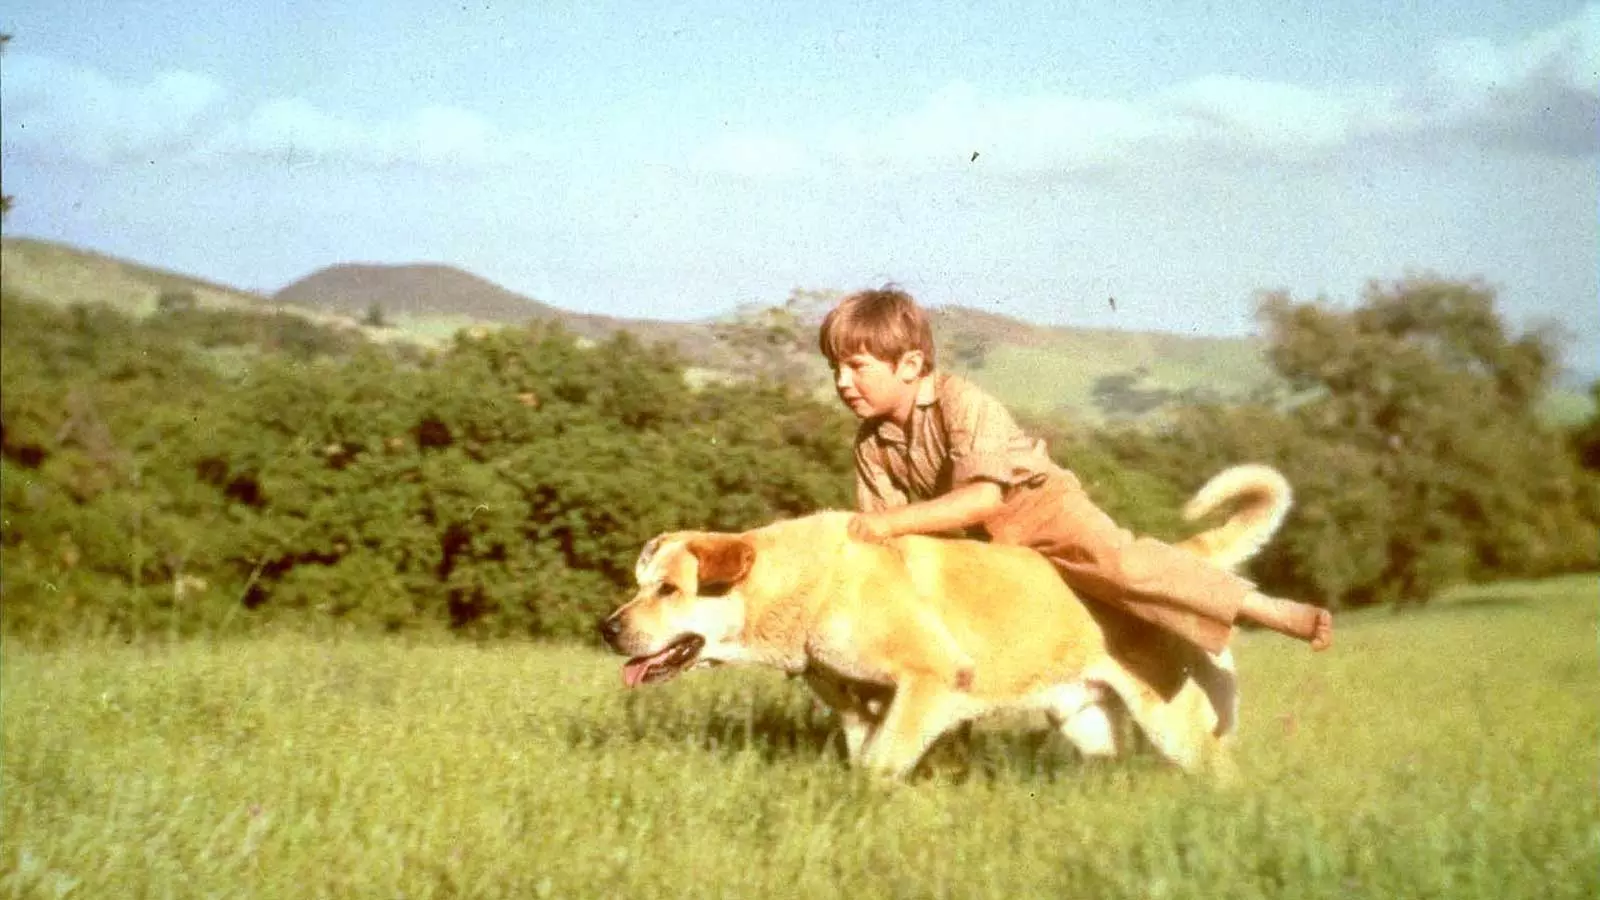 دوستی و همراهی پسری با سگی دوست در فیلم Old Yeller محصول 1957 کمپانی والت دیزنی